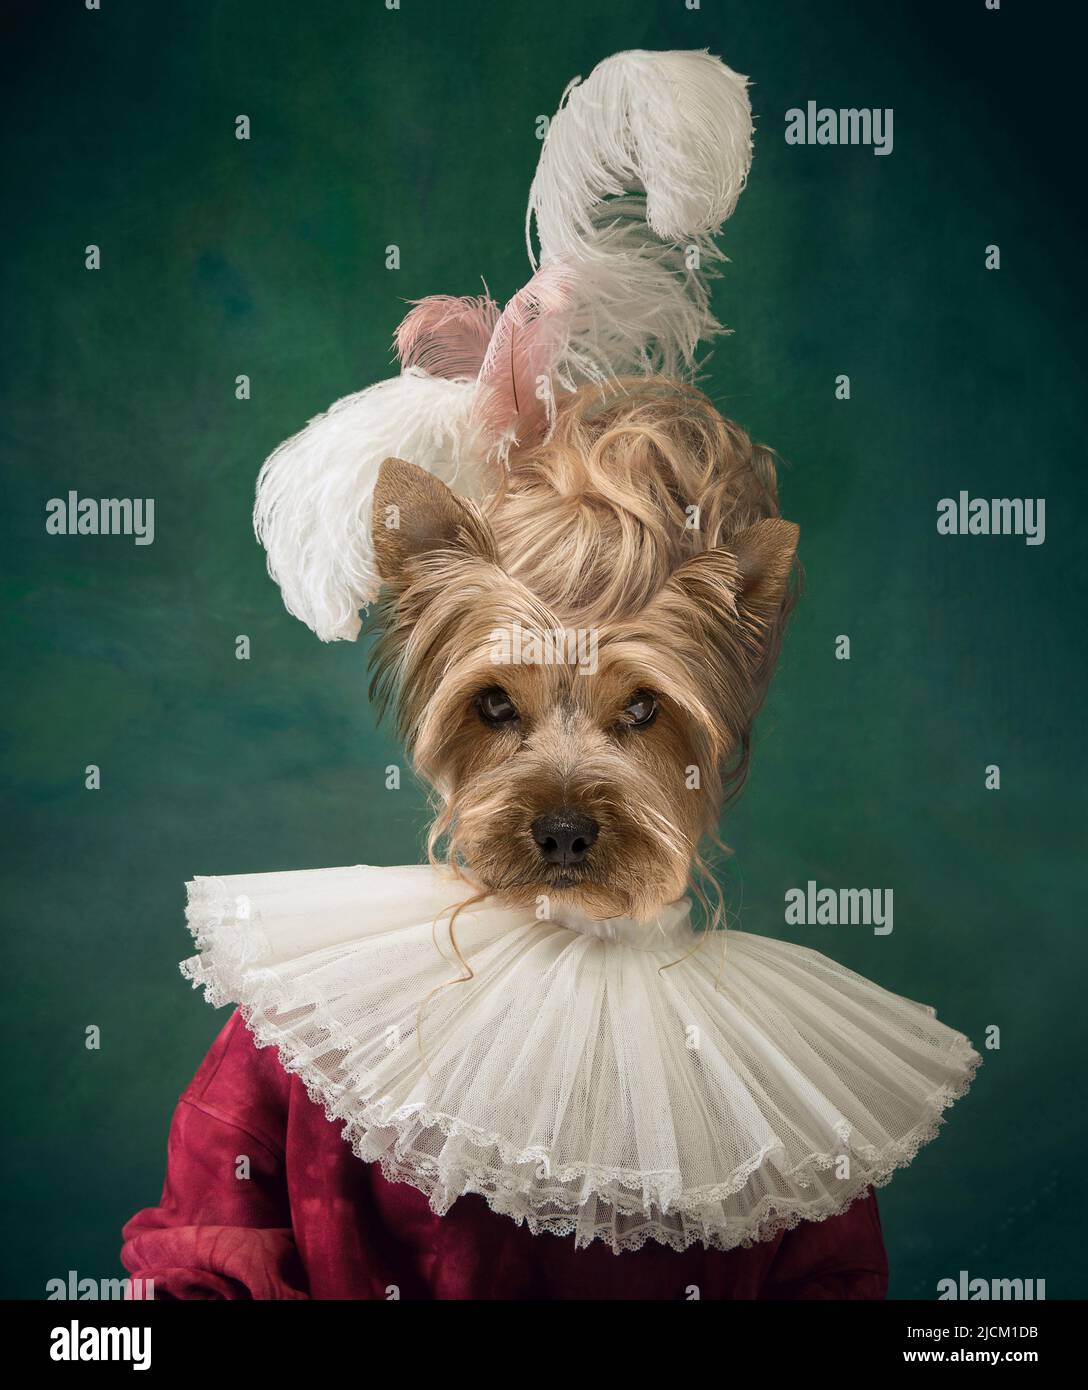 Schöne weibliche Modell wie mittelalterliche Person in Vintage-Kleidung von Hund Kopf isoliert auf dunklen Retro-Hintergrund geführt. Vergleich von Epochen, Kunstwerk Stockfoto